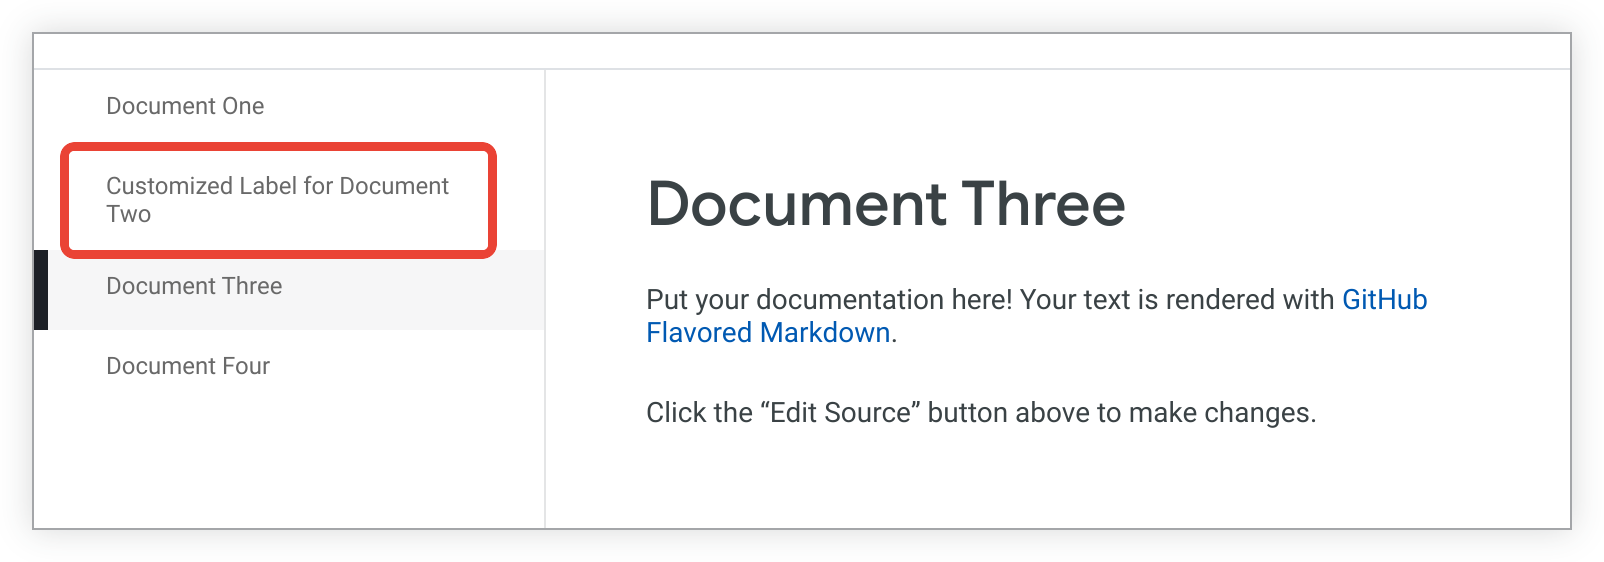 La page document_two est répertoriée comme étiquette personnalisée pour le document 2 dans la barre latérale.